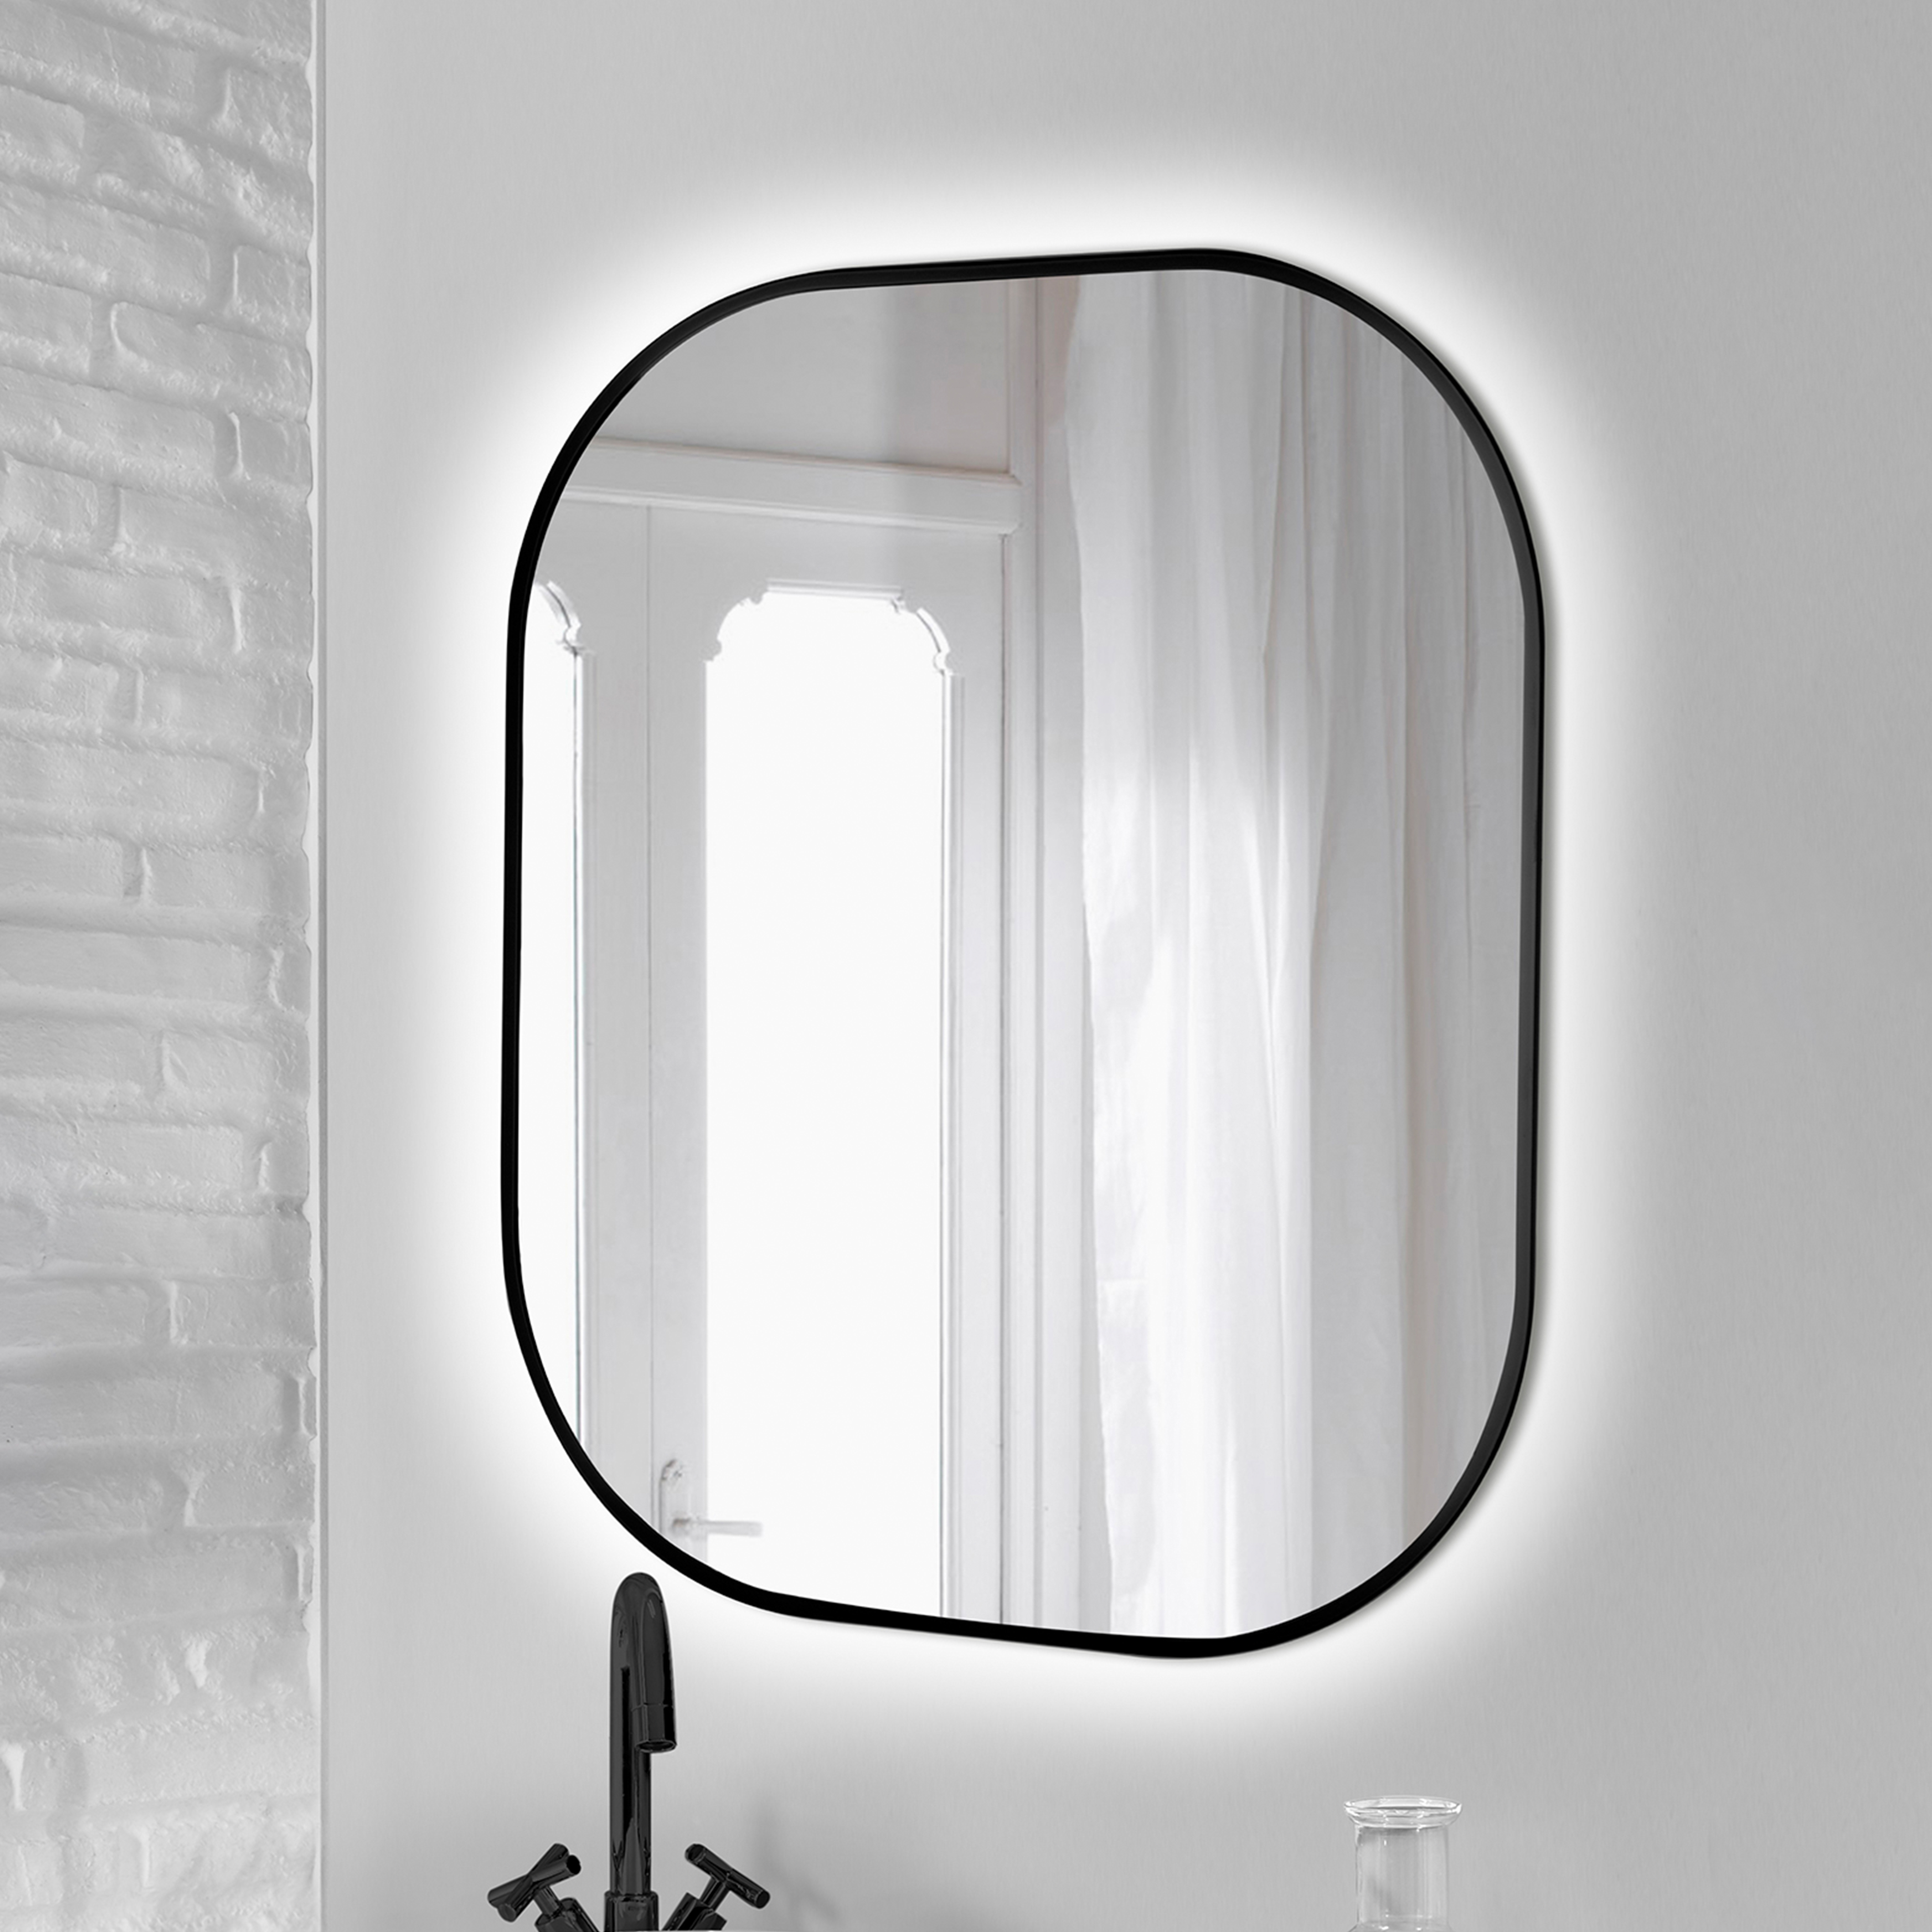  Miroir Cepheus avec eclairage decoratif a LED et cadre noir, arrondi rectangulaire 600 x 800 mm, AC 230V 50Hz, 12 W, Aluminium et Verre